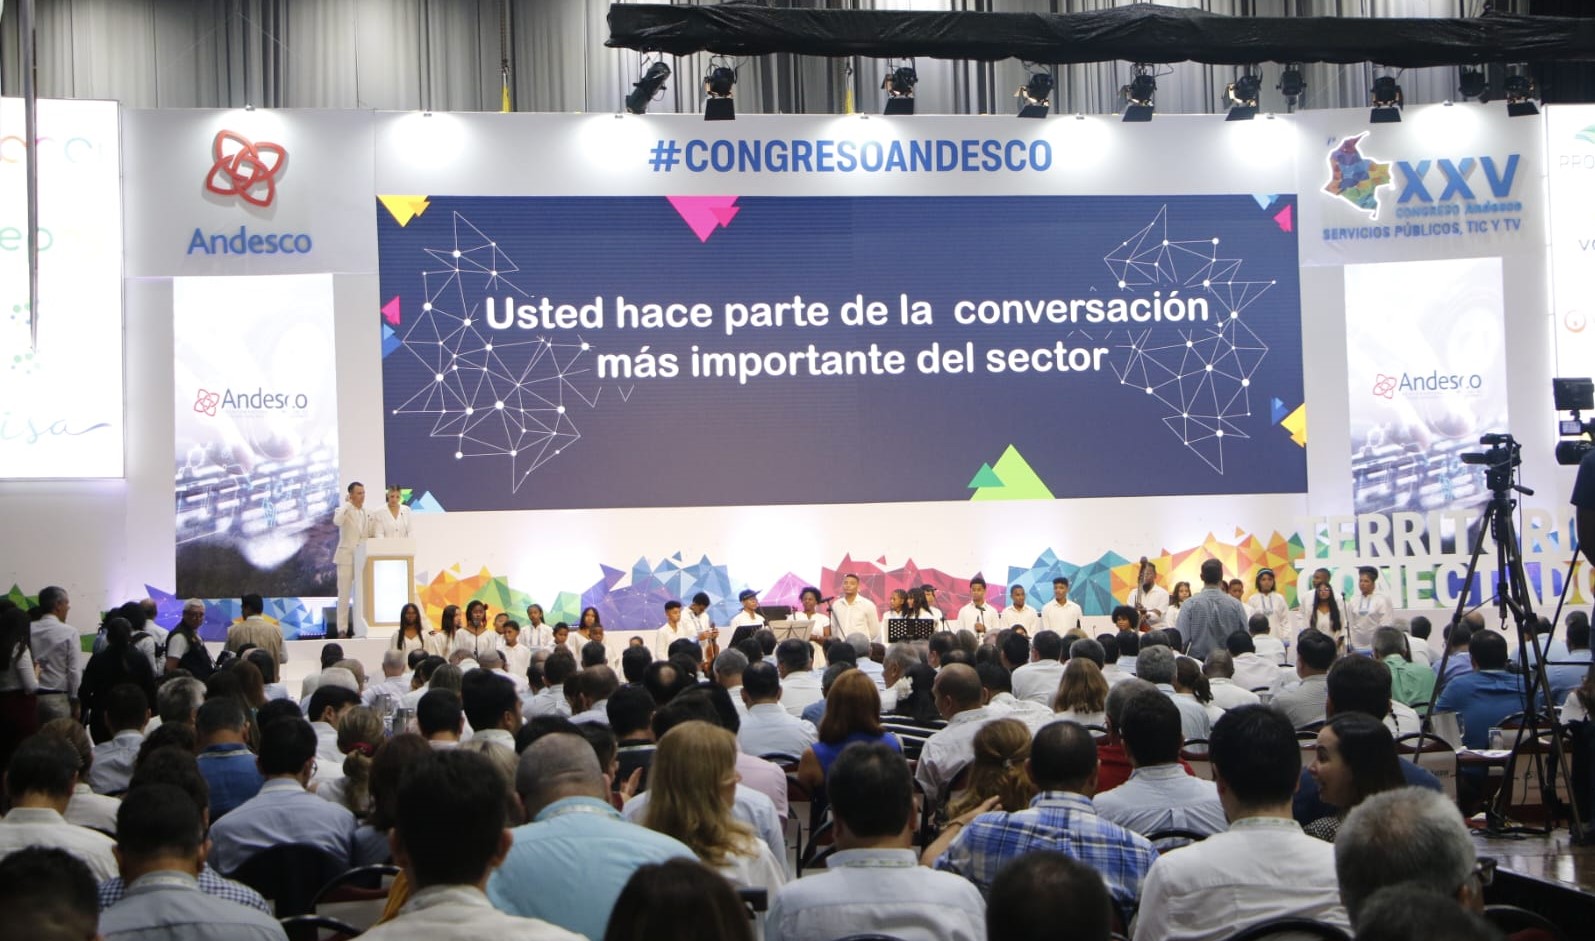 Participantes congreso Andesco